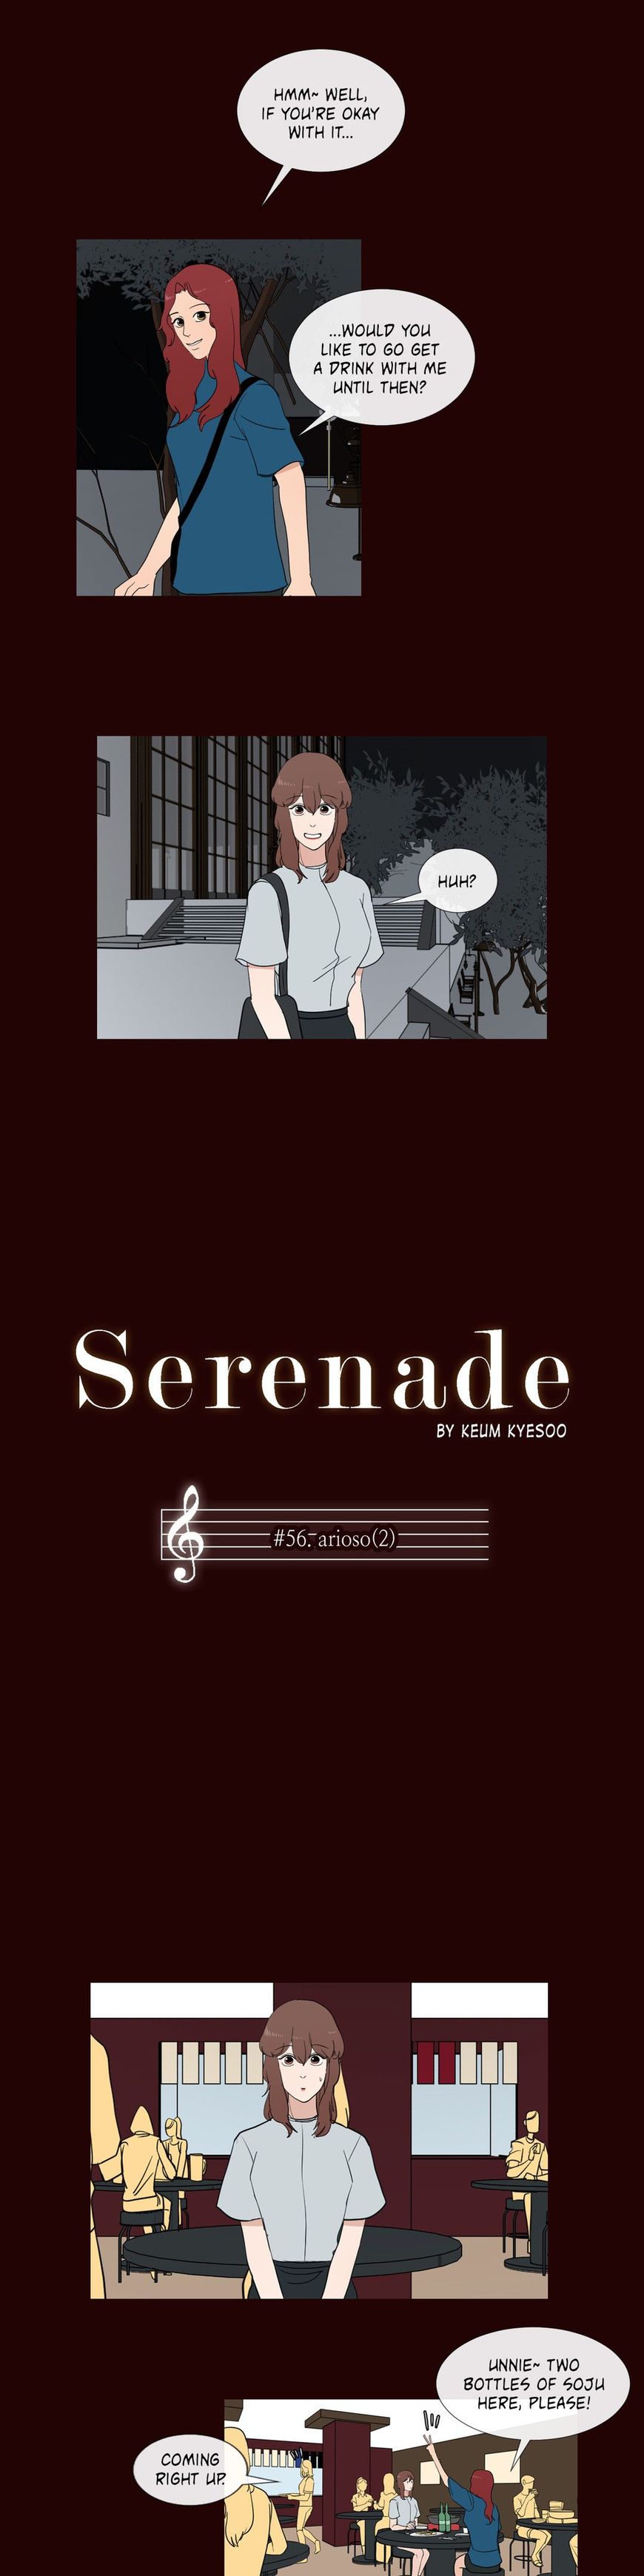 Serenade (Keum Kyesoo) 56